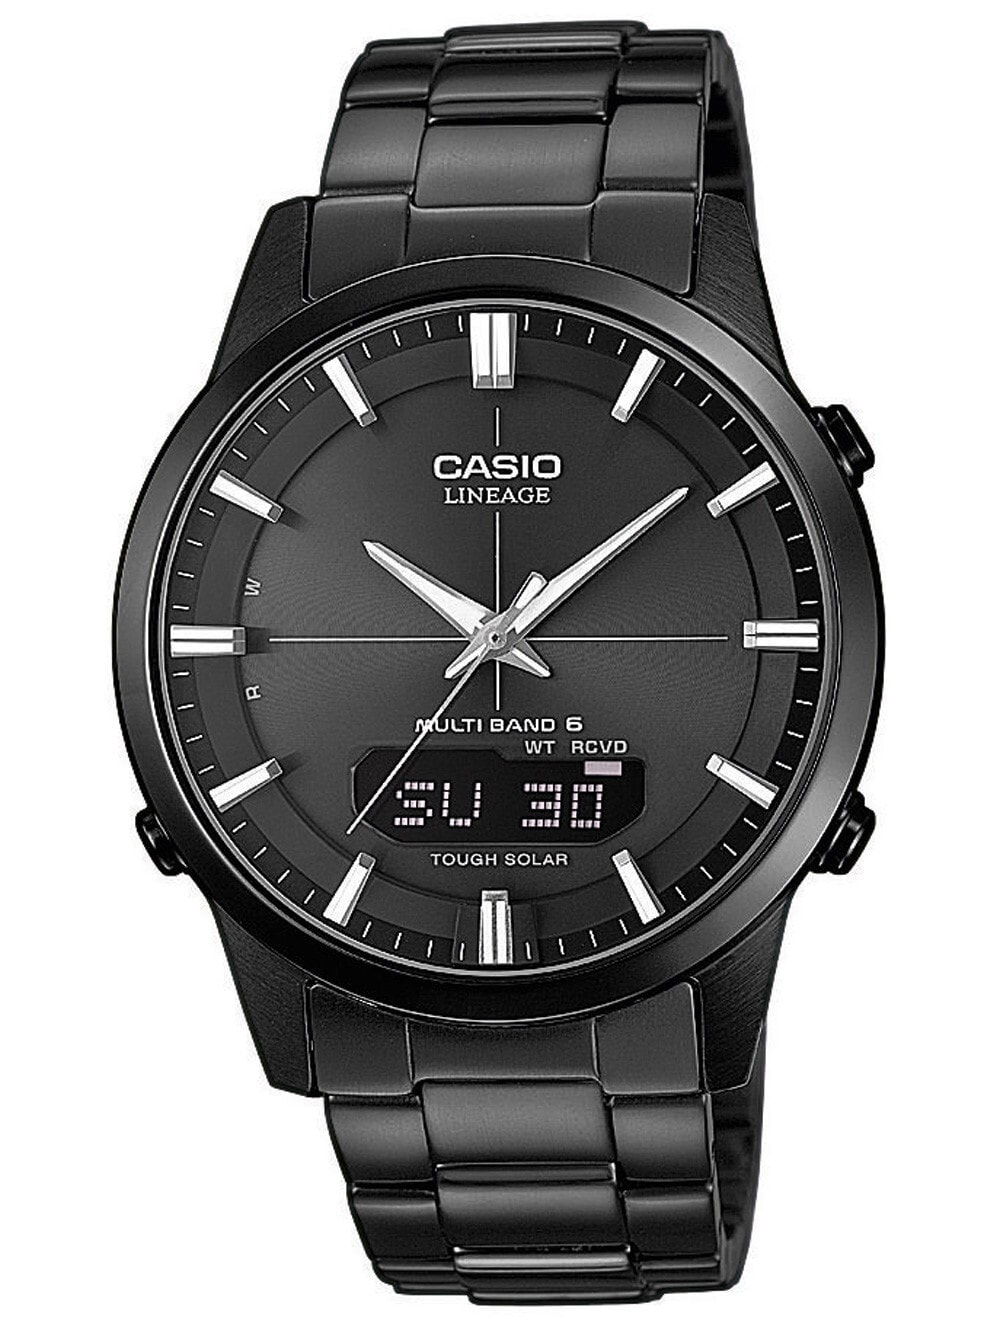 Мужские наручные часы с черным браслетом CASIO LCW-M170DB-1AER Radio Controlled Solar 40mm 5 ATM